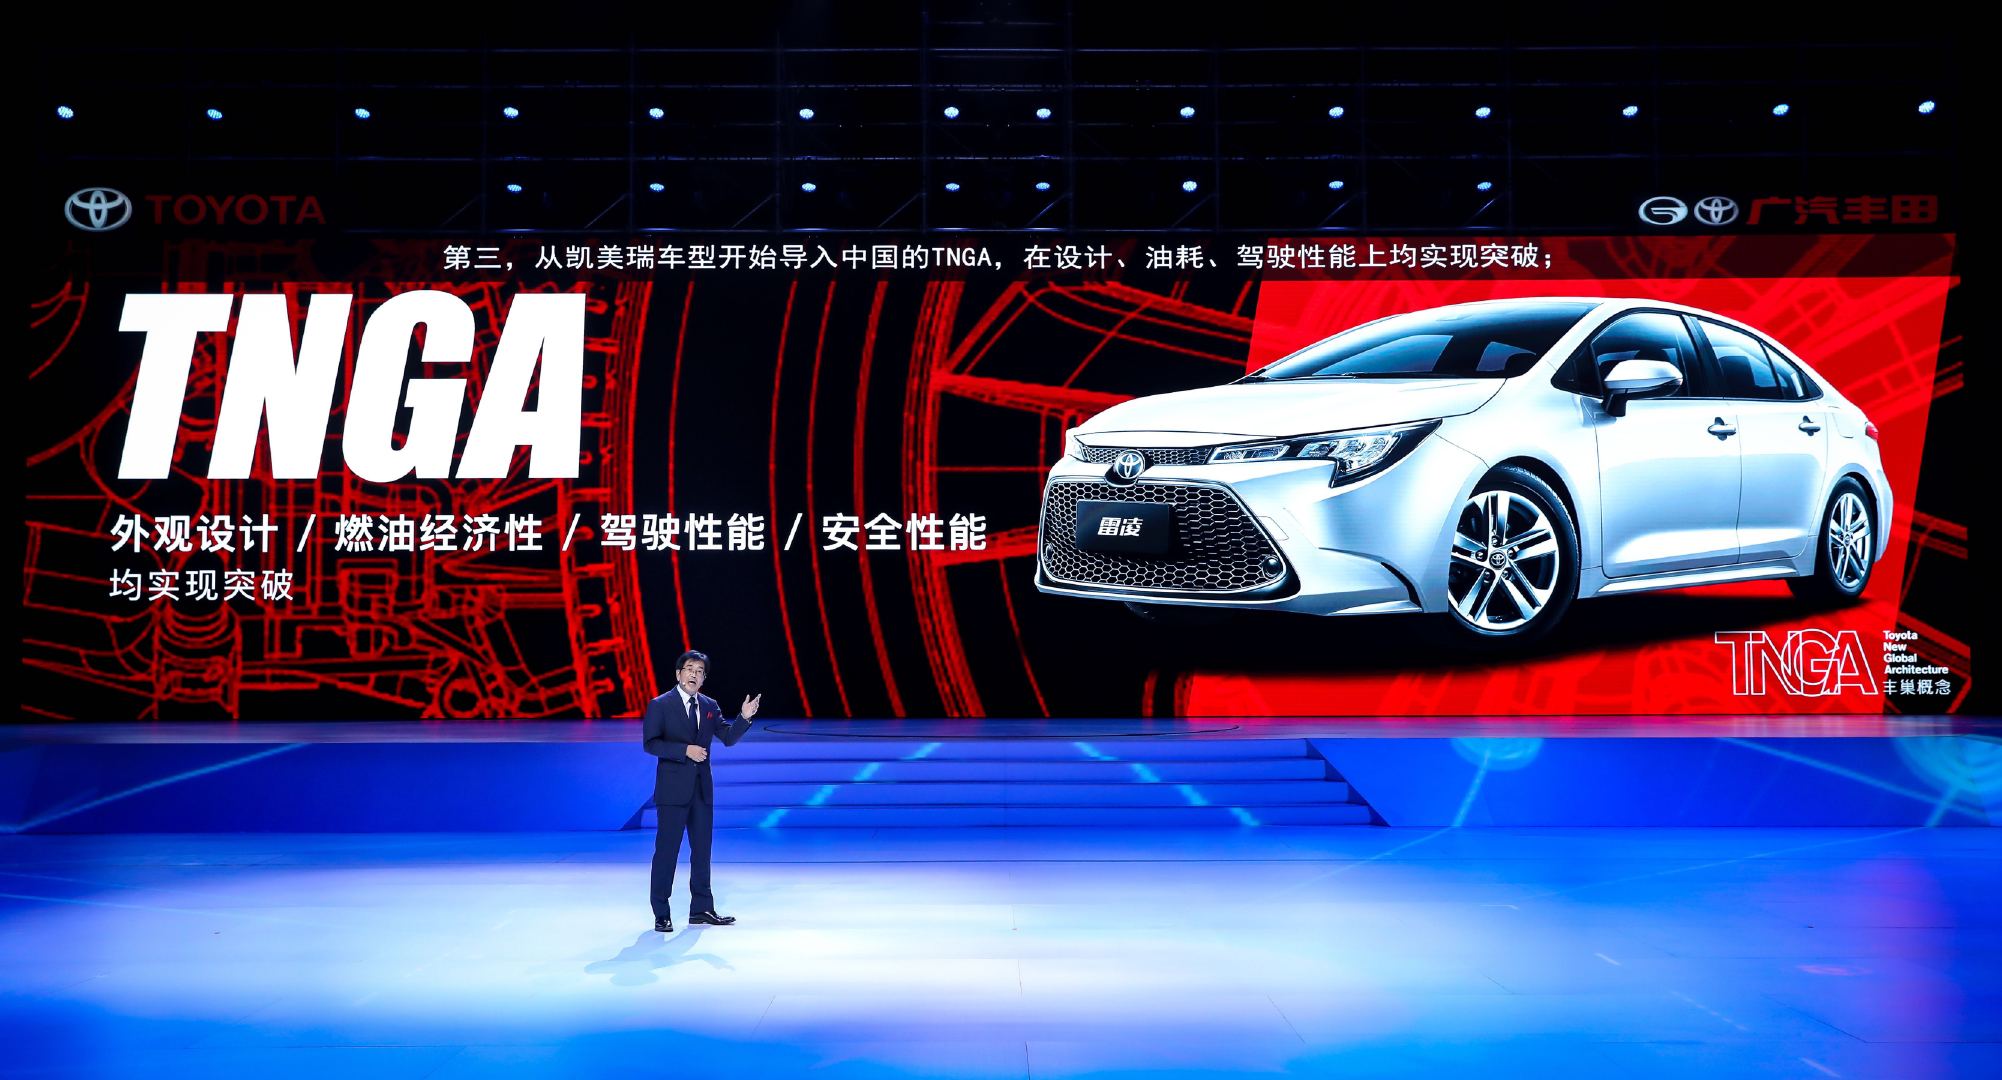 月18日拉开帷幕的第二十届上海国际汽车工业展览会以下简称上海车展